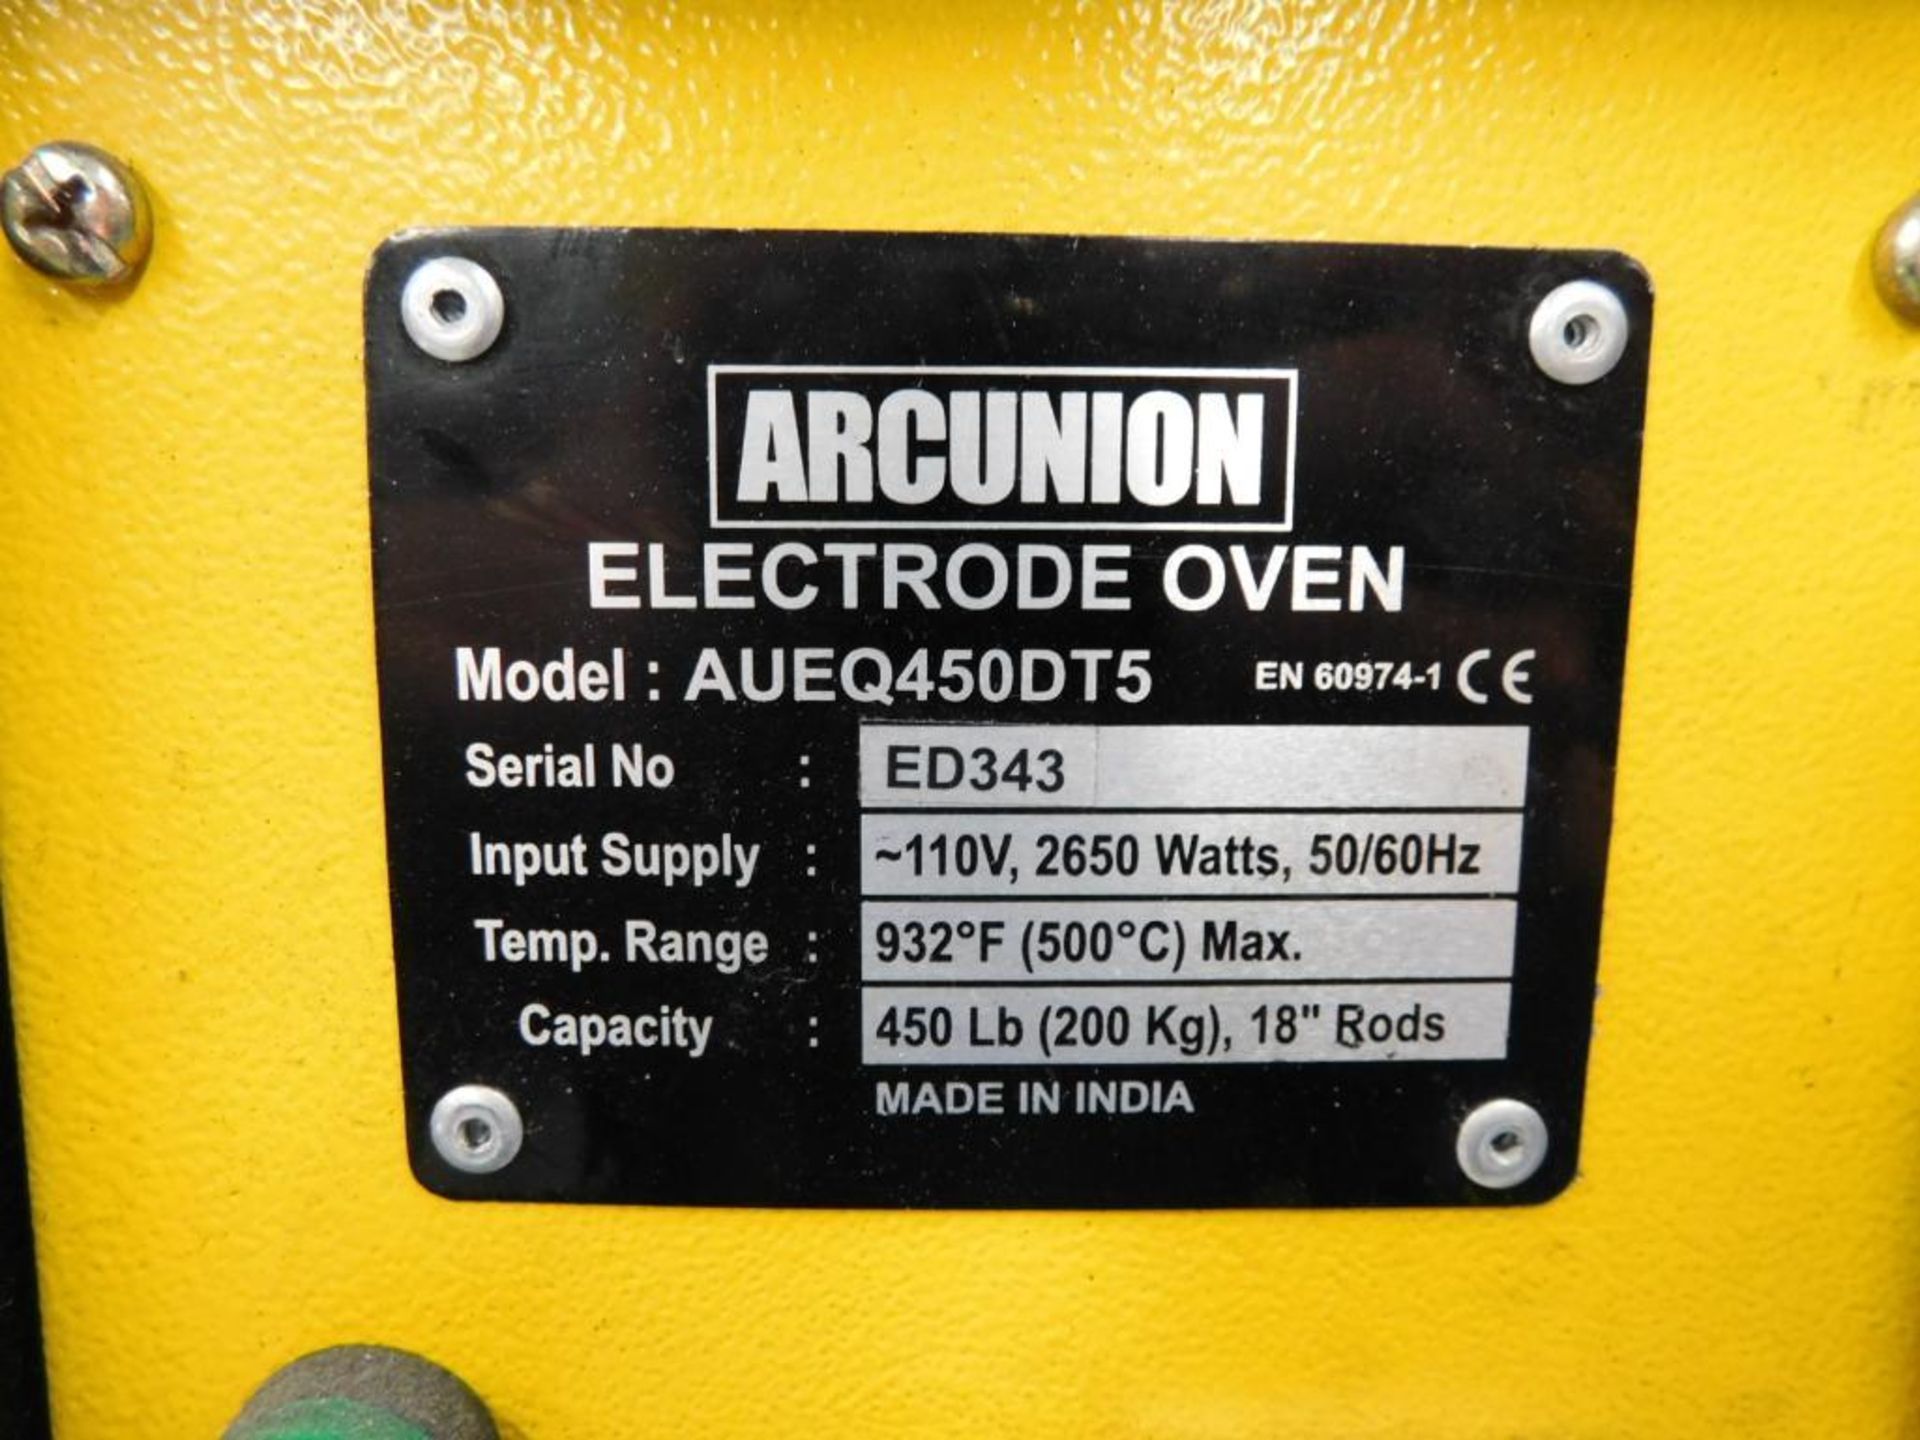 Arc Union Model AUEQ450DT5 Electrode Oven - Image 5 of 5